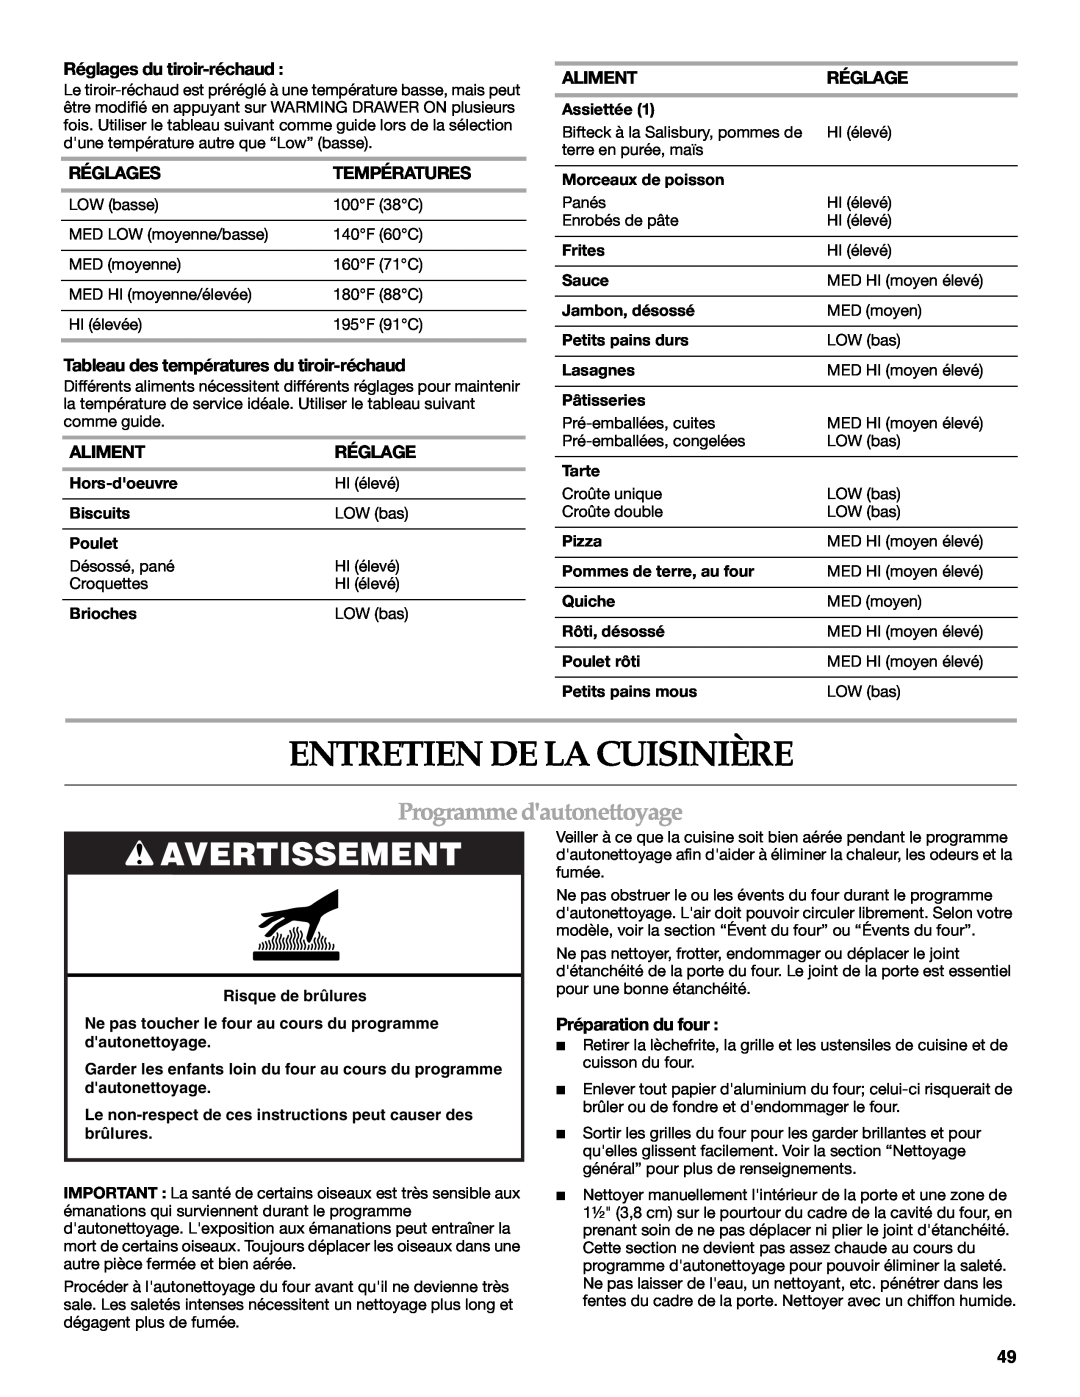 KitchenAid KGSK901 manual Entretien De La Cuisinière, Programme dautonettoyage, Avertissement, Réglages du tiroir-réchaud 